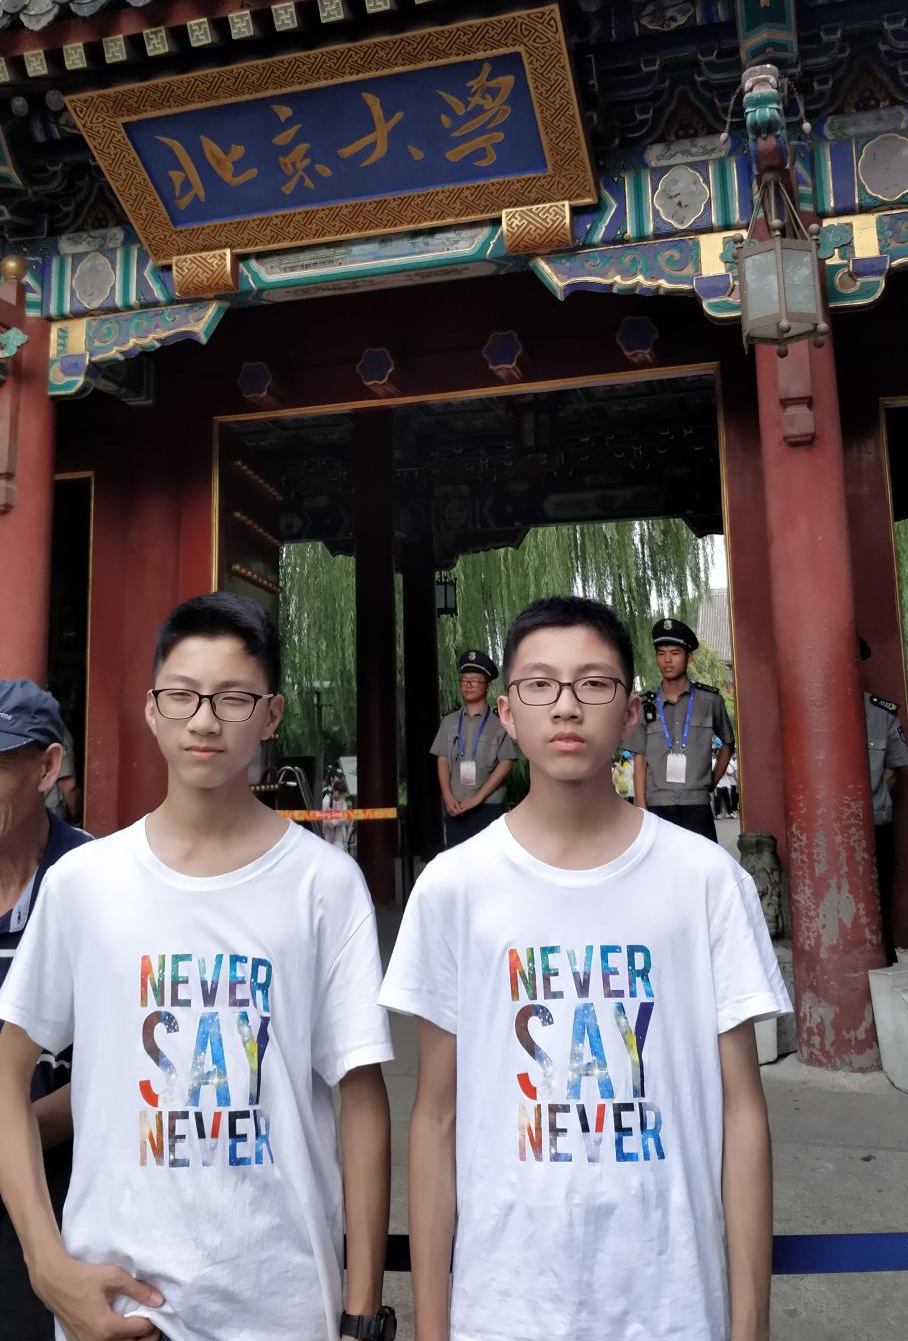 熊英翔和熊俊翔在北京大学门口。来源 北京大学